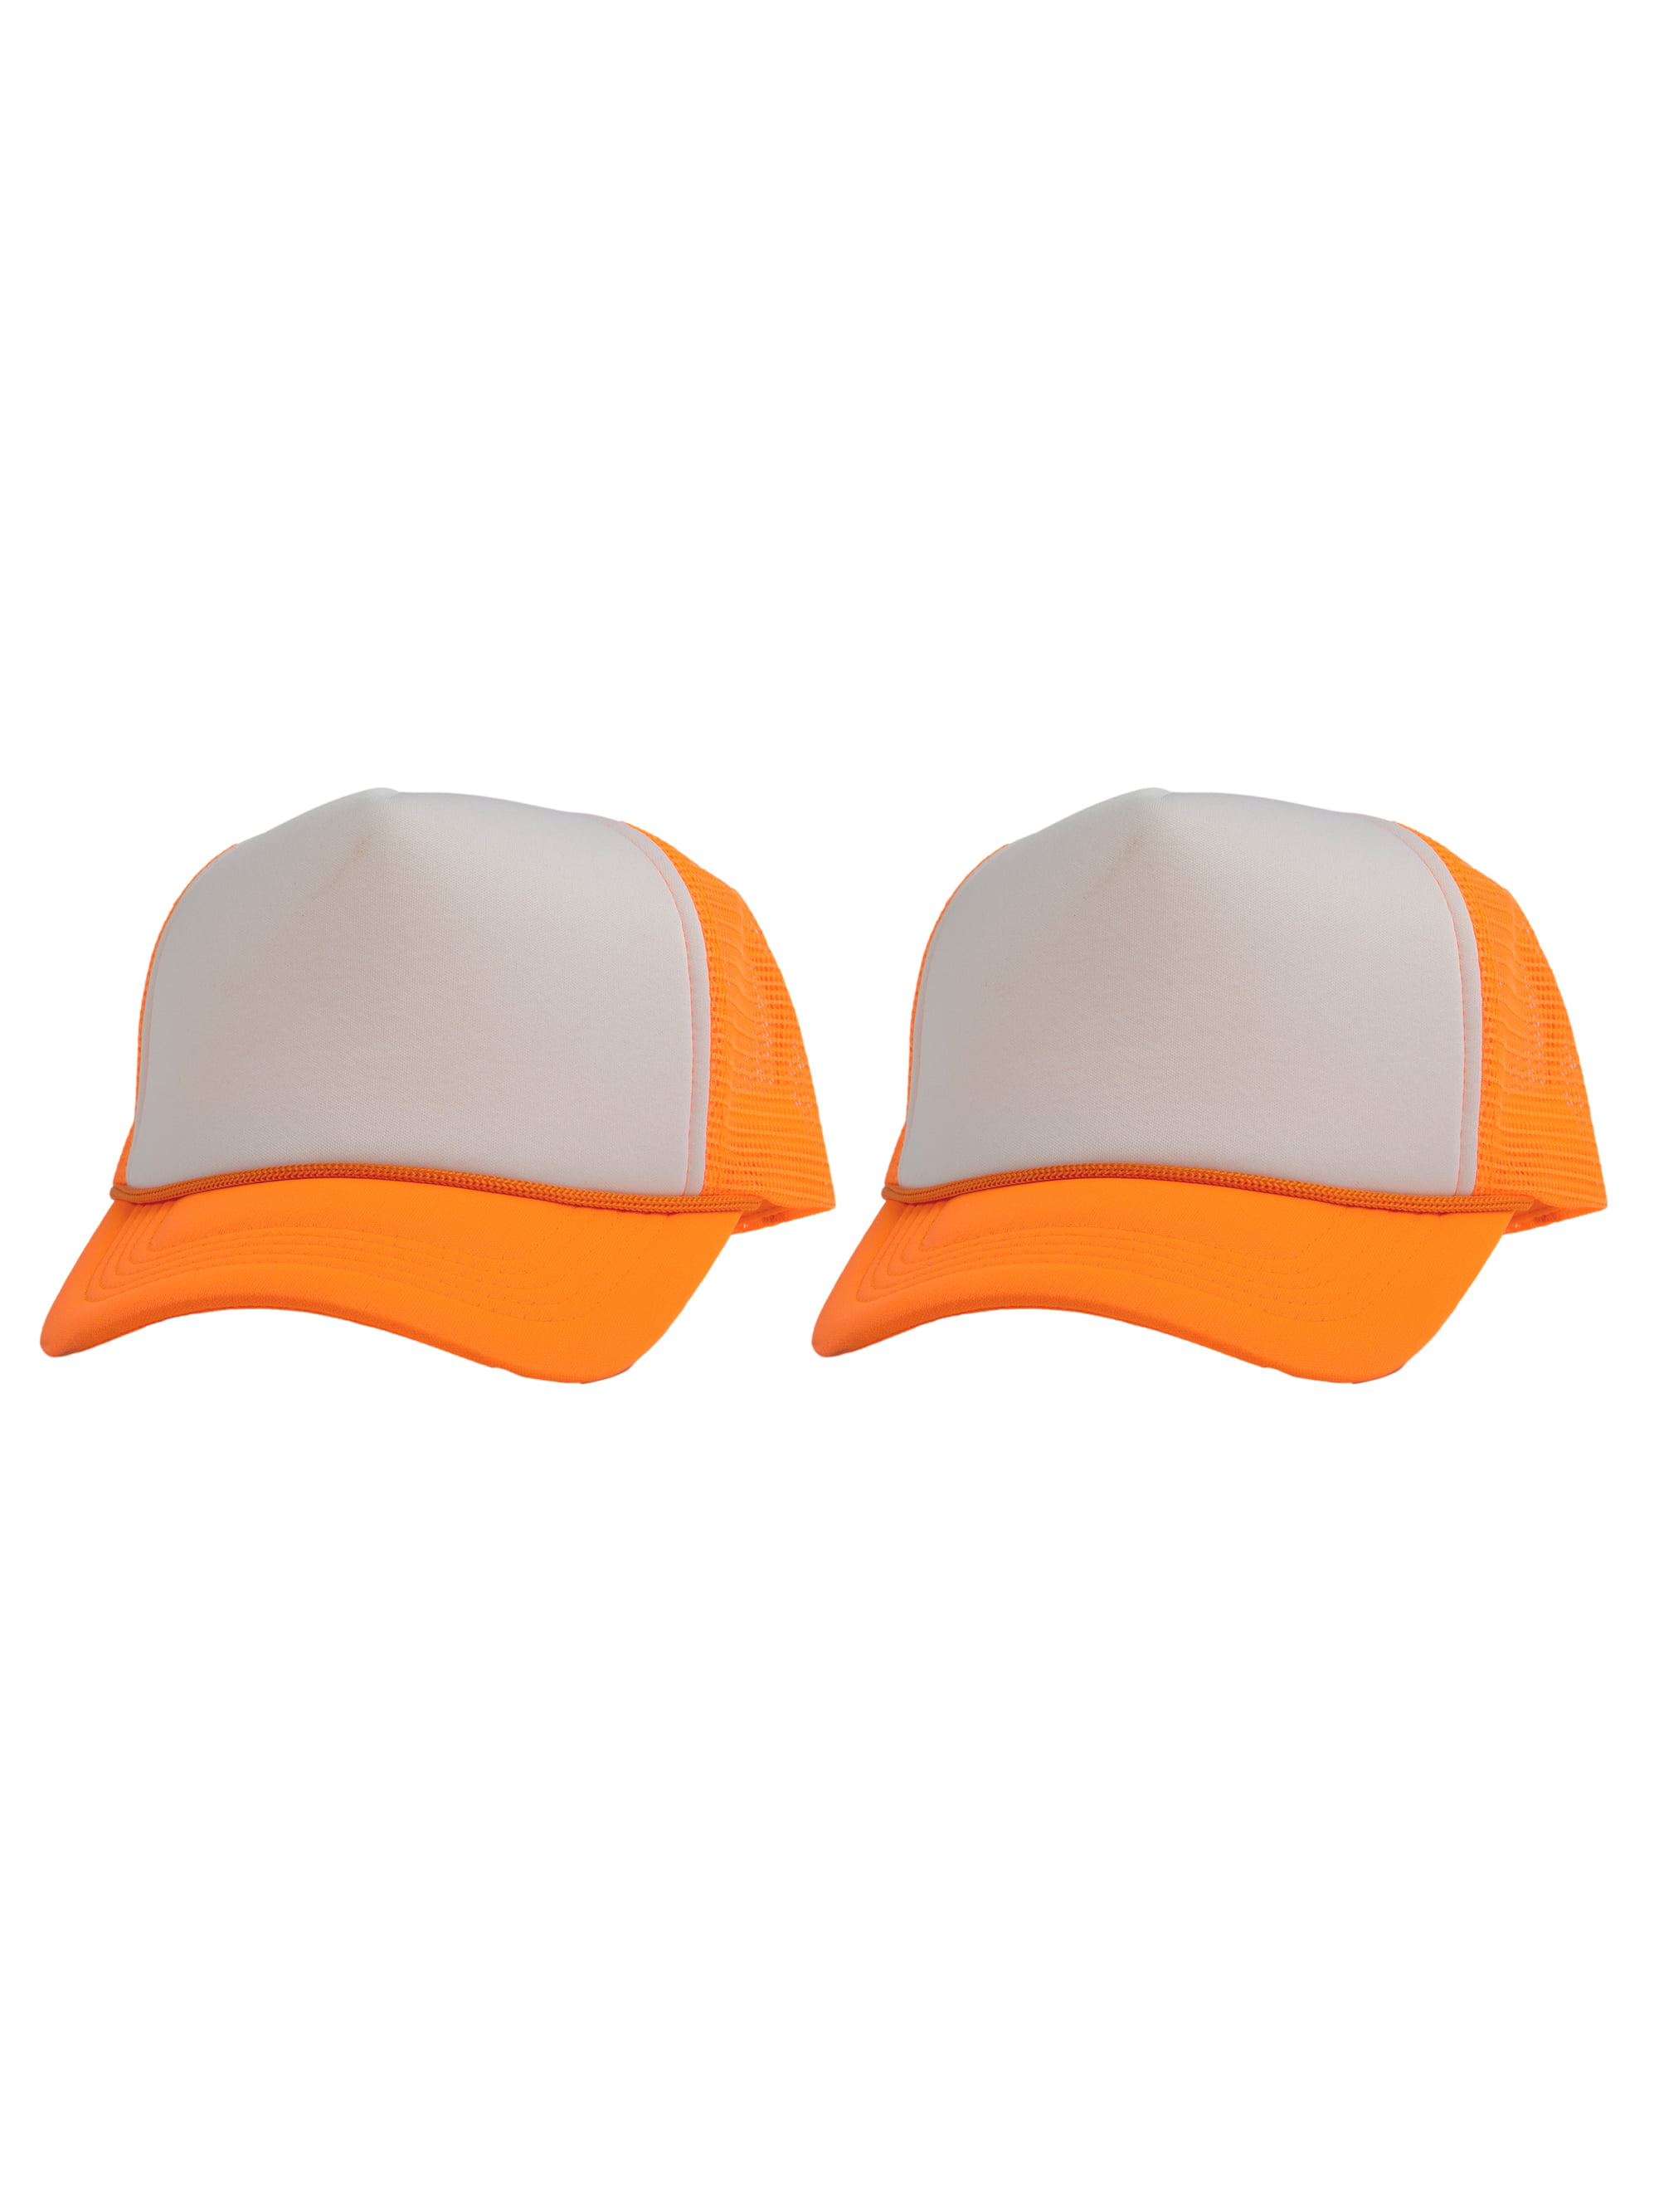 Top Headwear Men's Blank Rope Trucker Foam Mesh Plain Hats, 2pc White/Neon Orange, Adult Unisex, Size: One Size